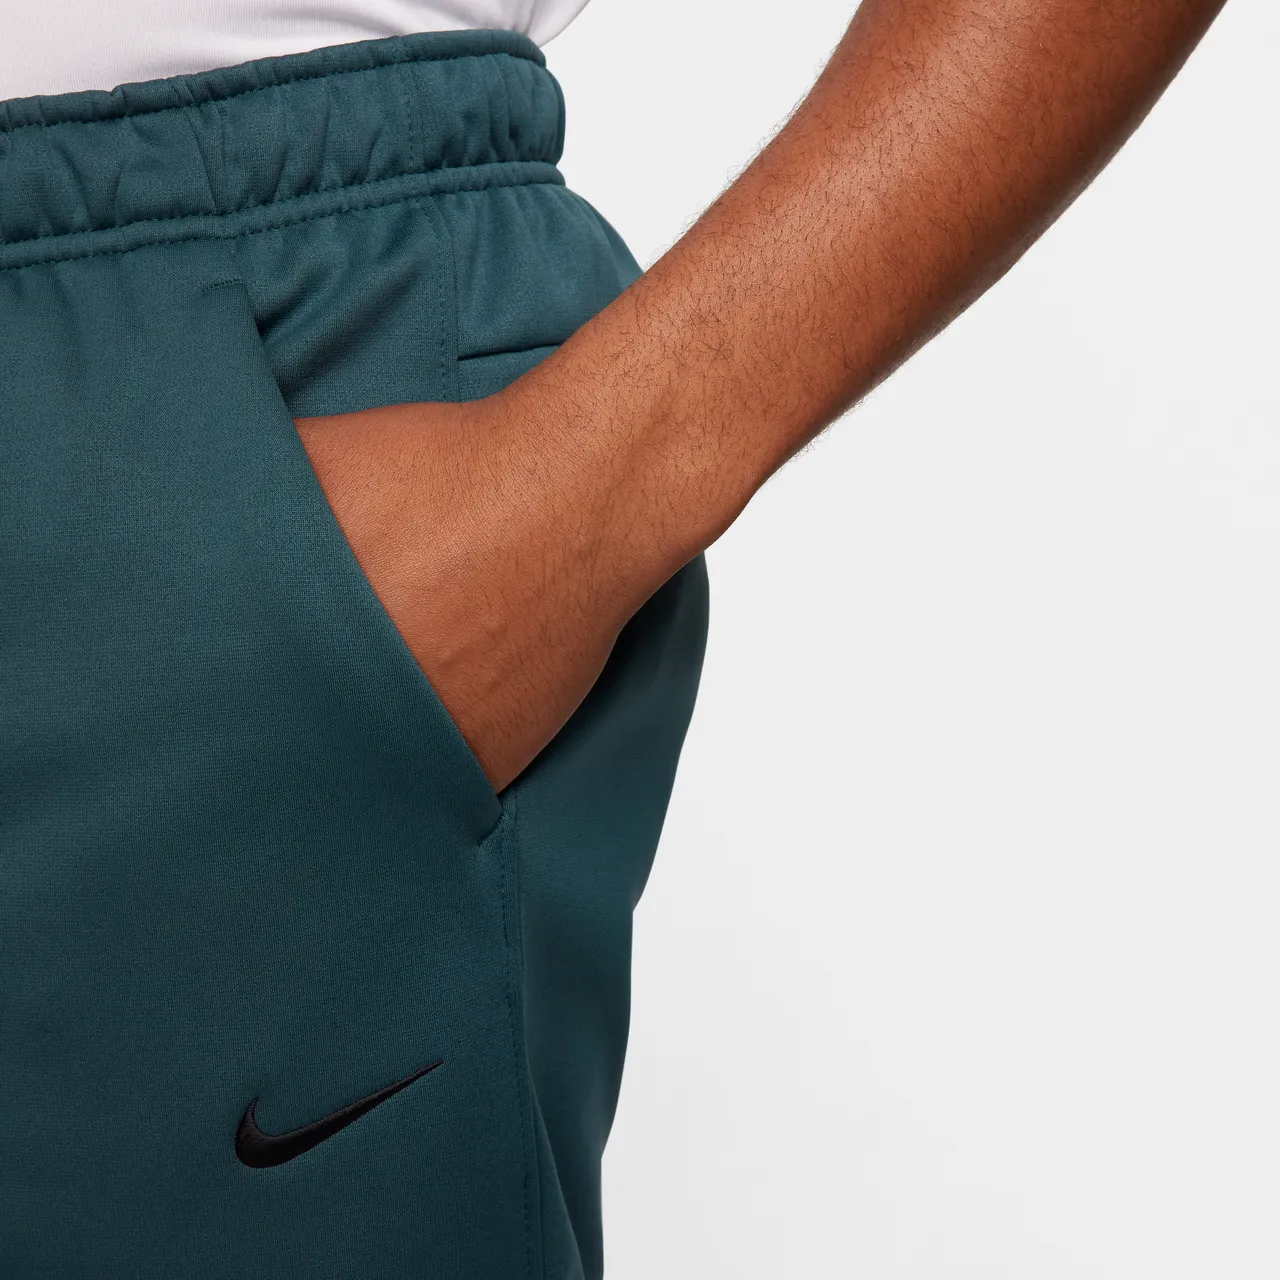 Nike Therma schmal zulaufende Therma-FIT Fitnesshose für Herren - Grün